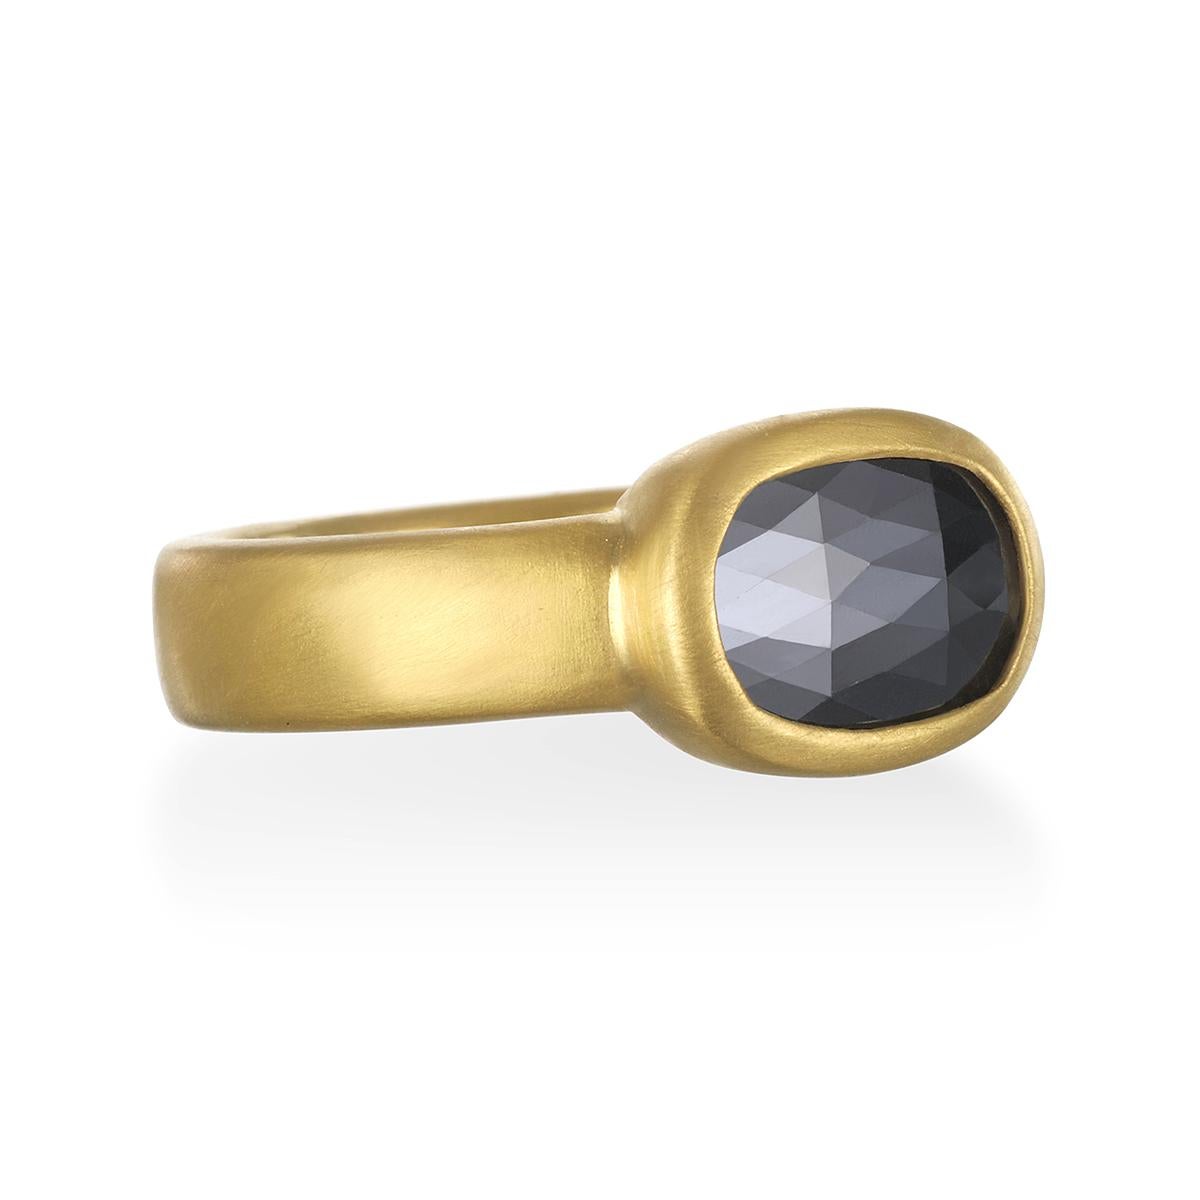 A Kim Bague en or 22 carats avec chaton en diamant noir 

Diamant noir 1,87 cts

Queue carrée 5 x 2,4mm

Taille 7.5 - peut être redimensionnée

Fabriqué aux États-Unis

